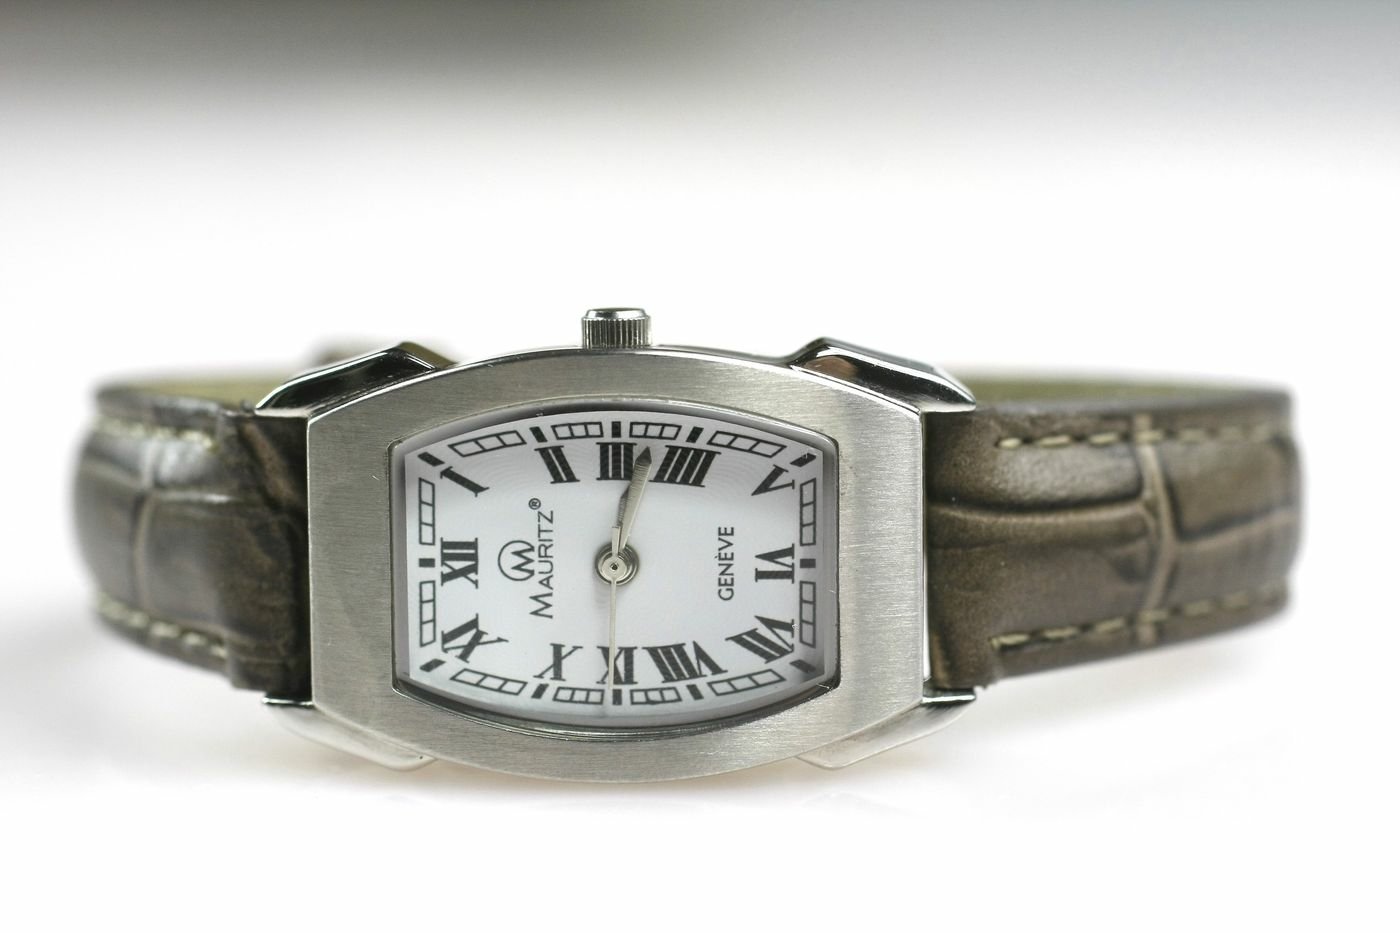 MAURITZ Geneve luxusné dámske hodinky